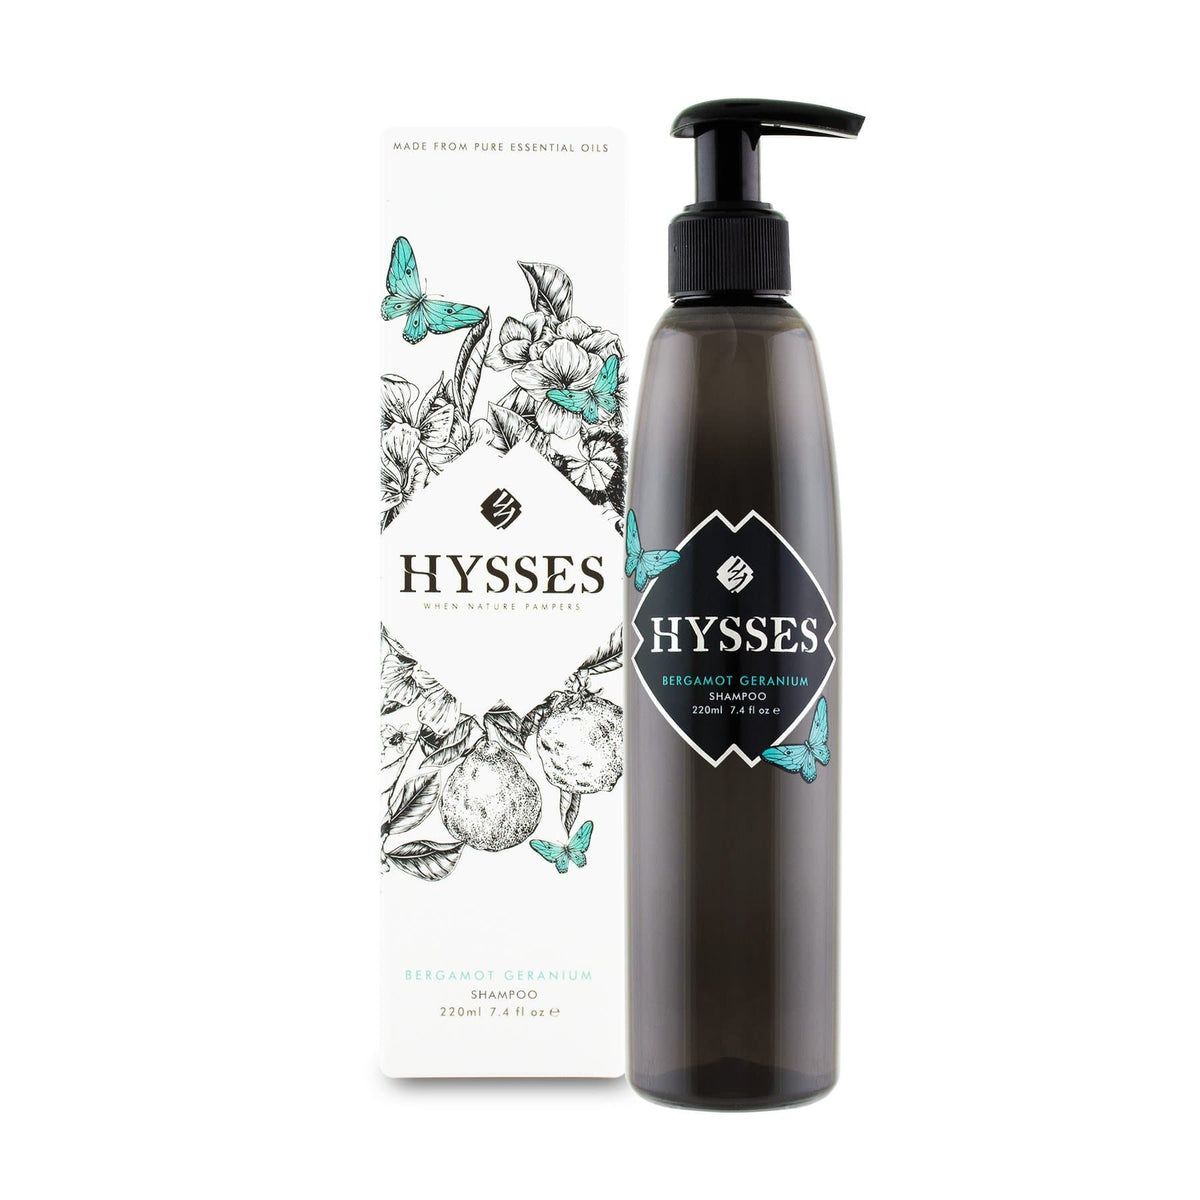 Hysses Hair Care Shampoo Bergamot Geranium, 220ml